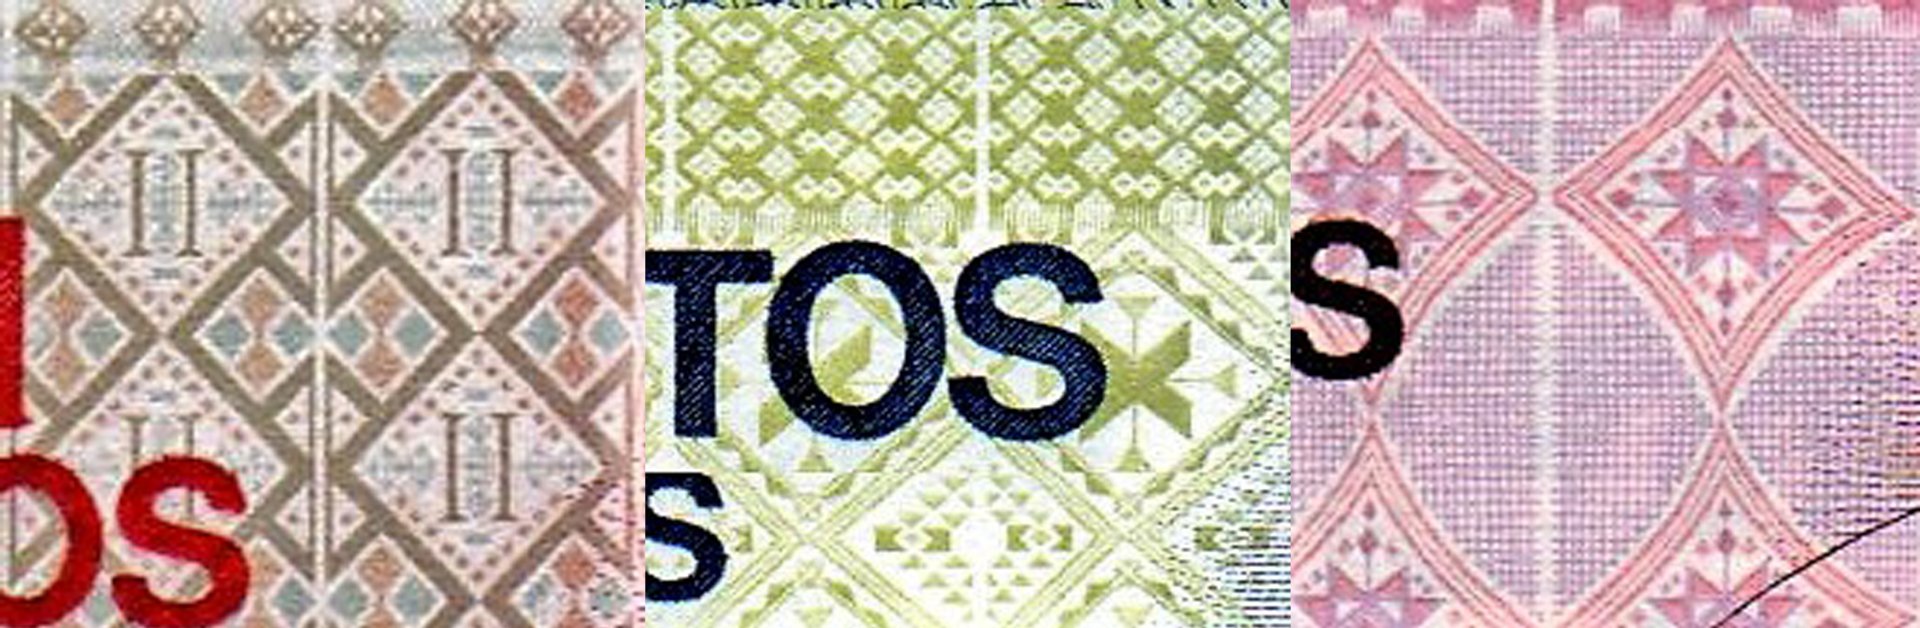 2. Detaily tradičních vzorů rukodělné textilie "panú di tera" z ostrova Santiago. A) Bankovka P#54  B) Bankovka P#55 C) Bankovka P#56